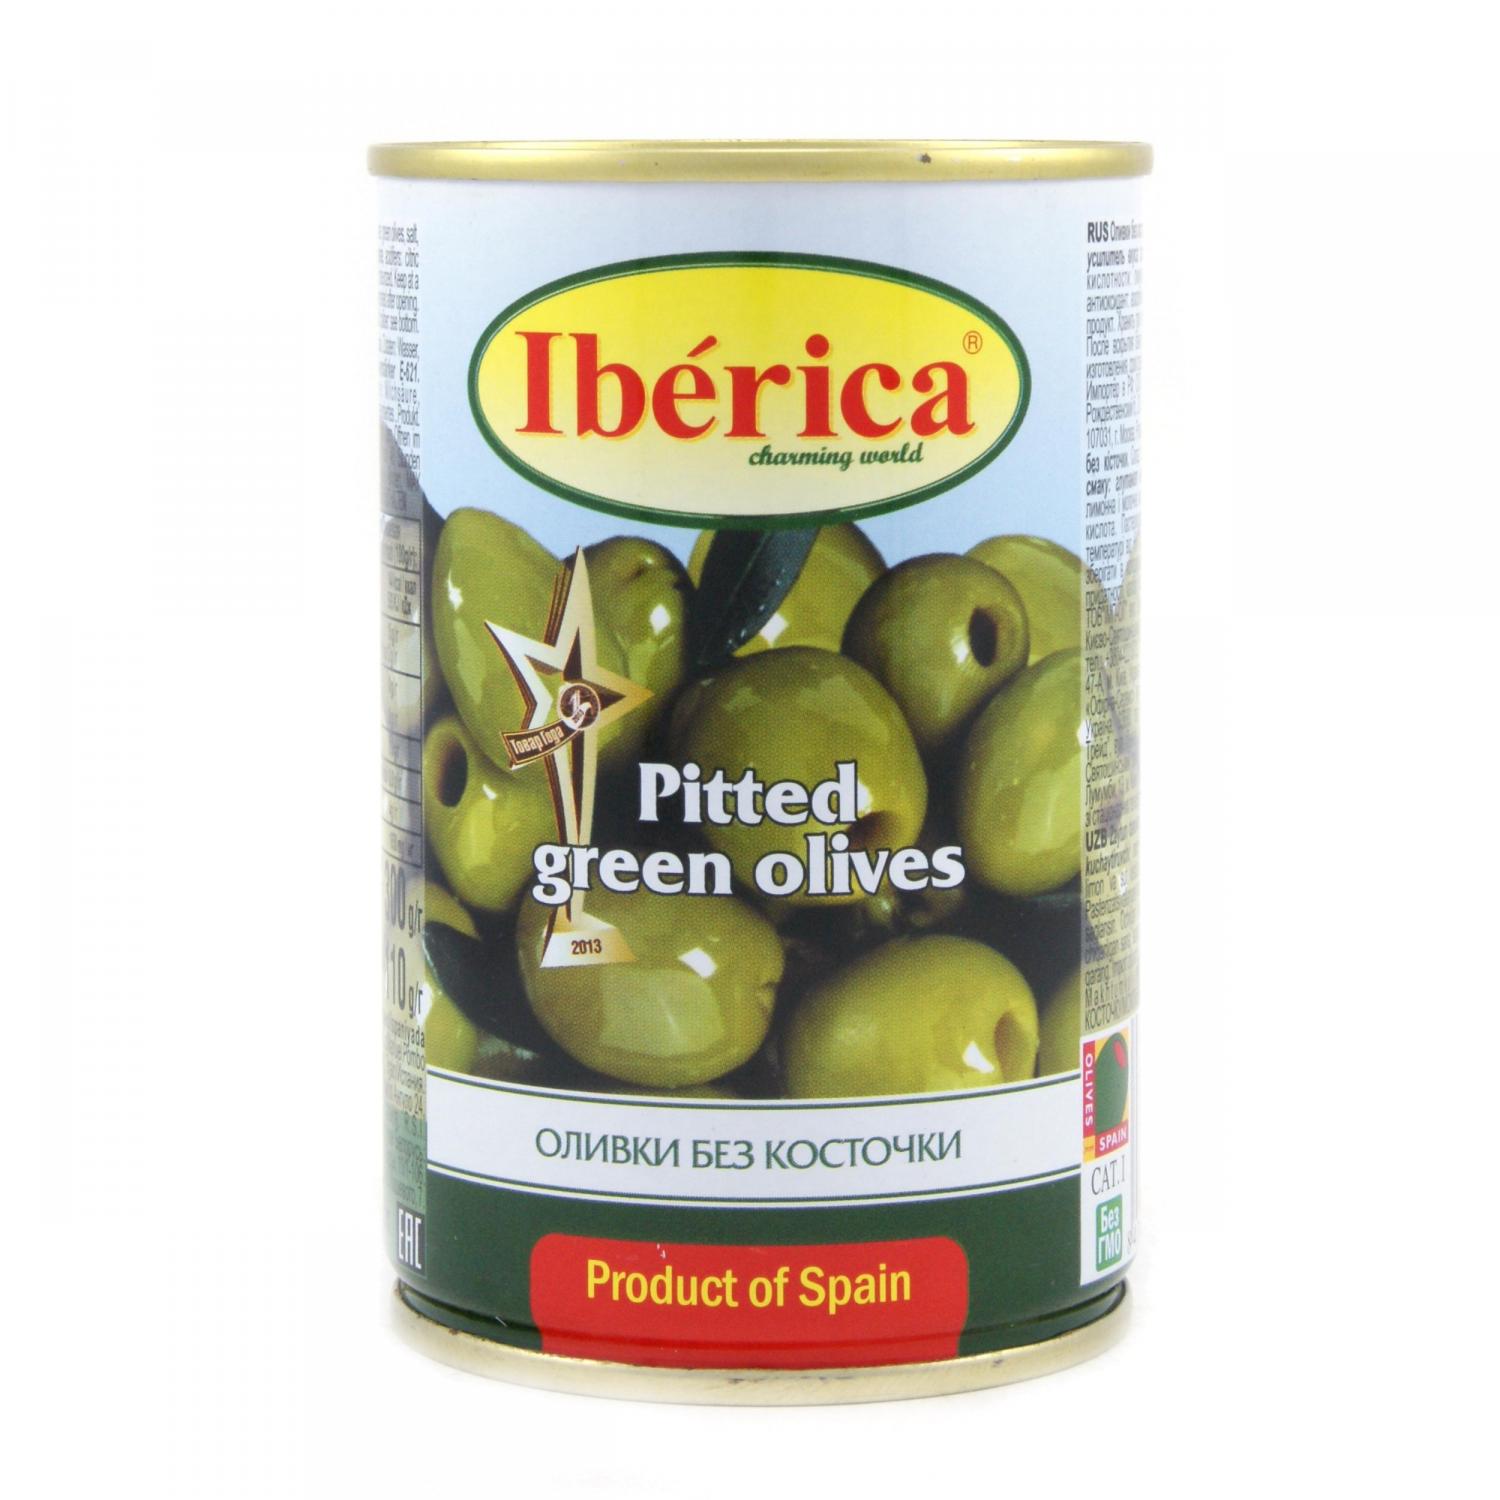 Оливки Iberica зеленые без косточки 300 г (223163) - фото 3